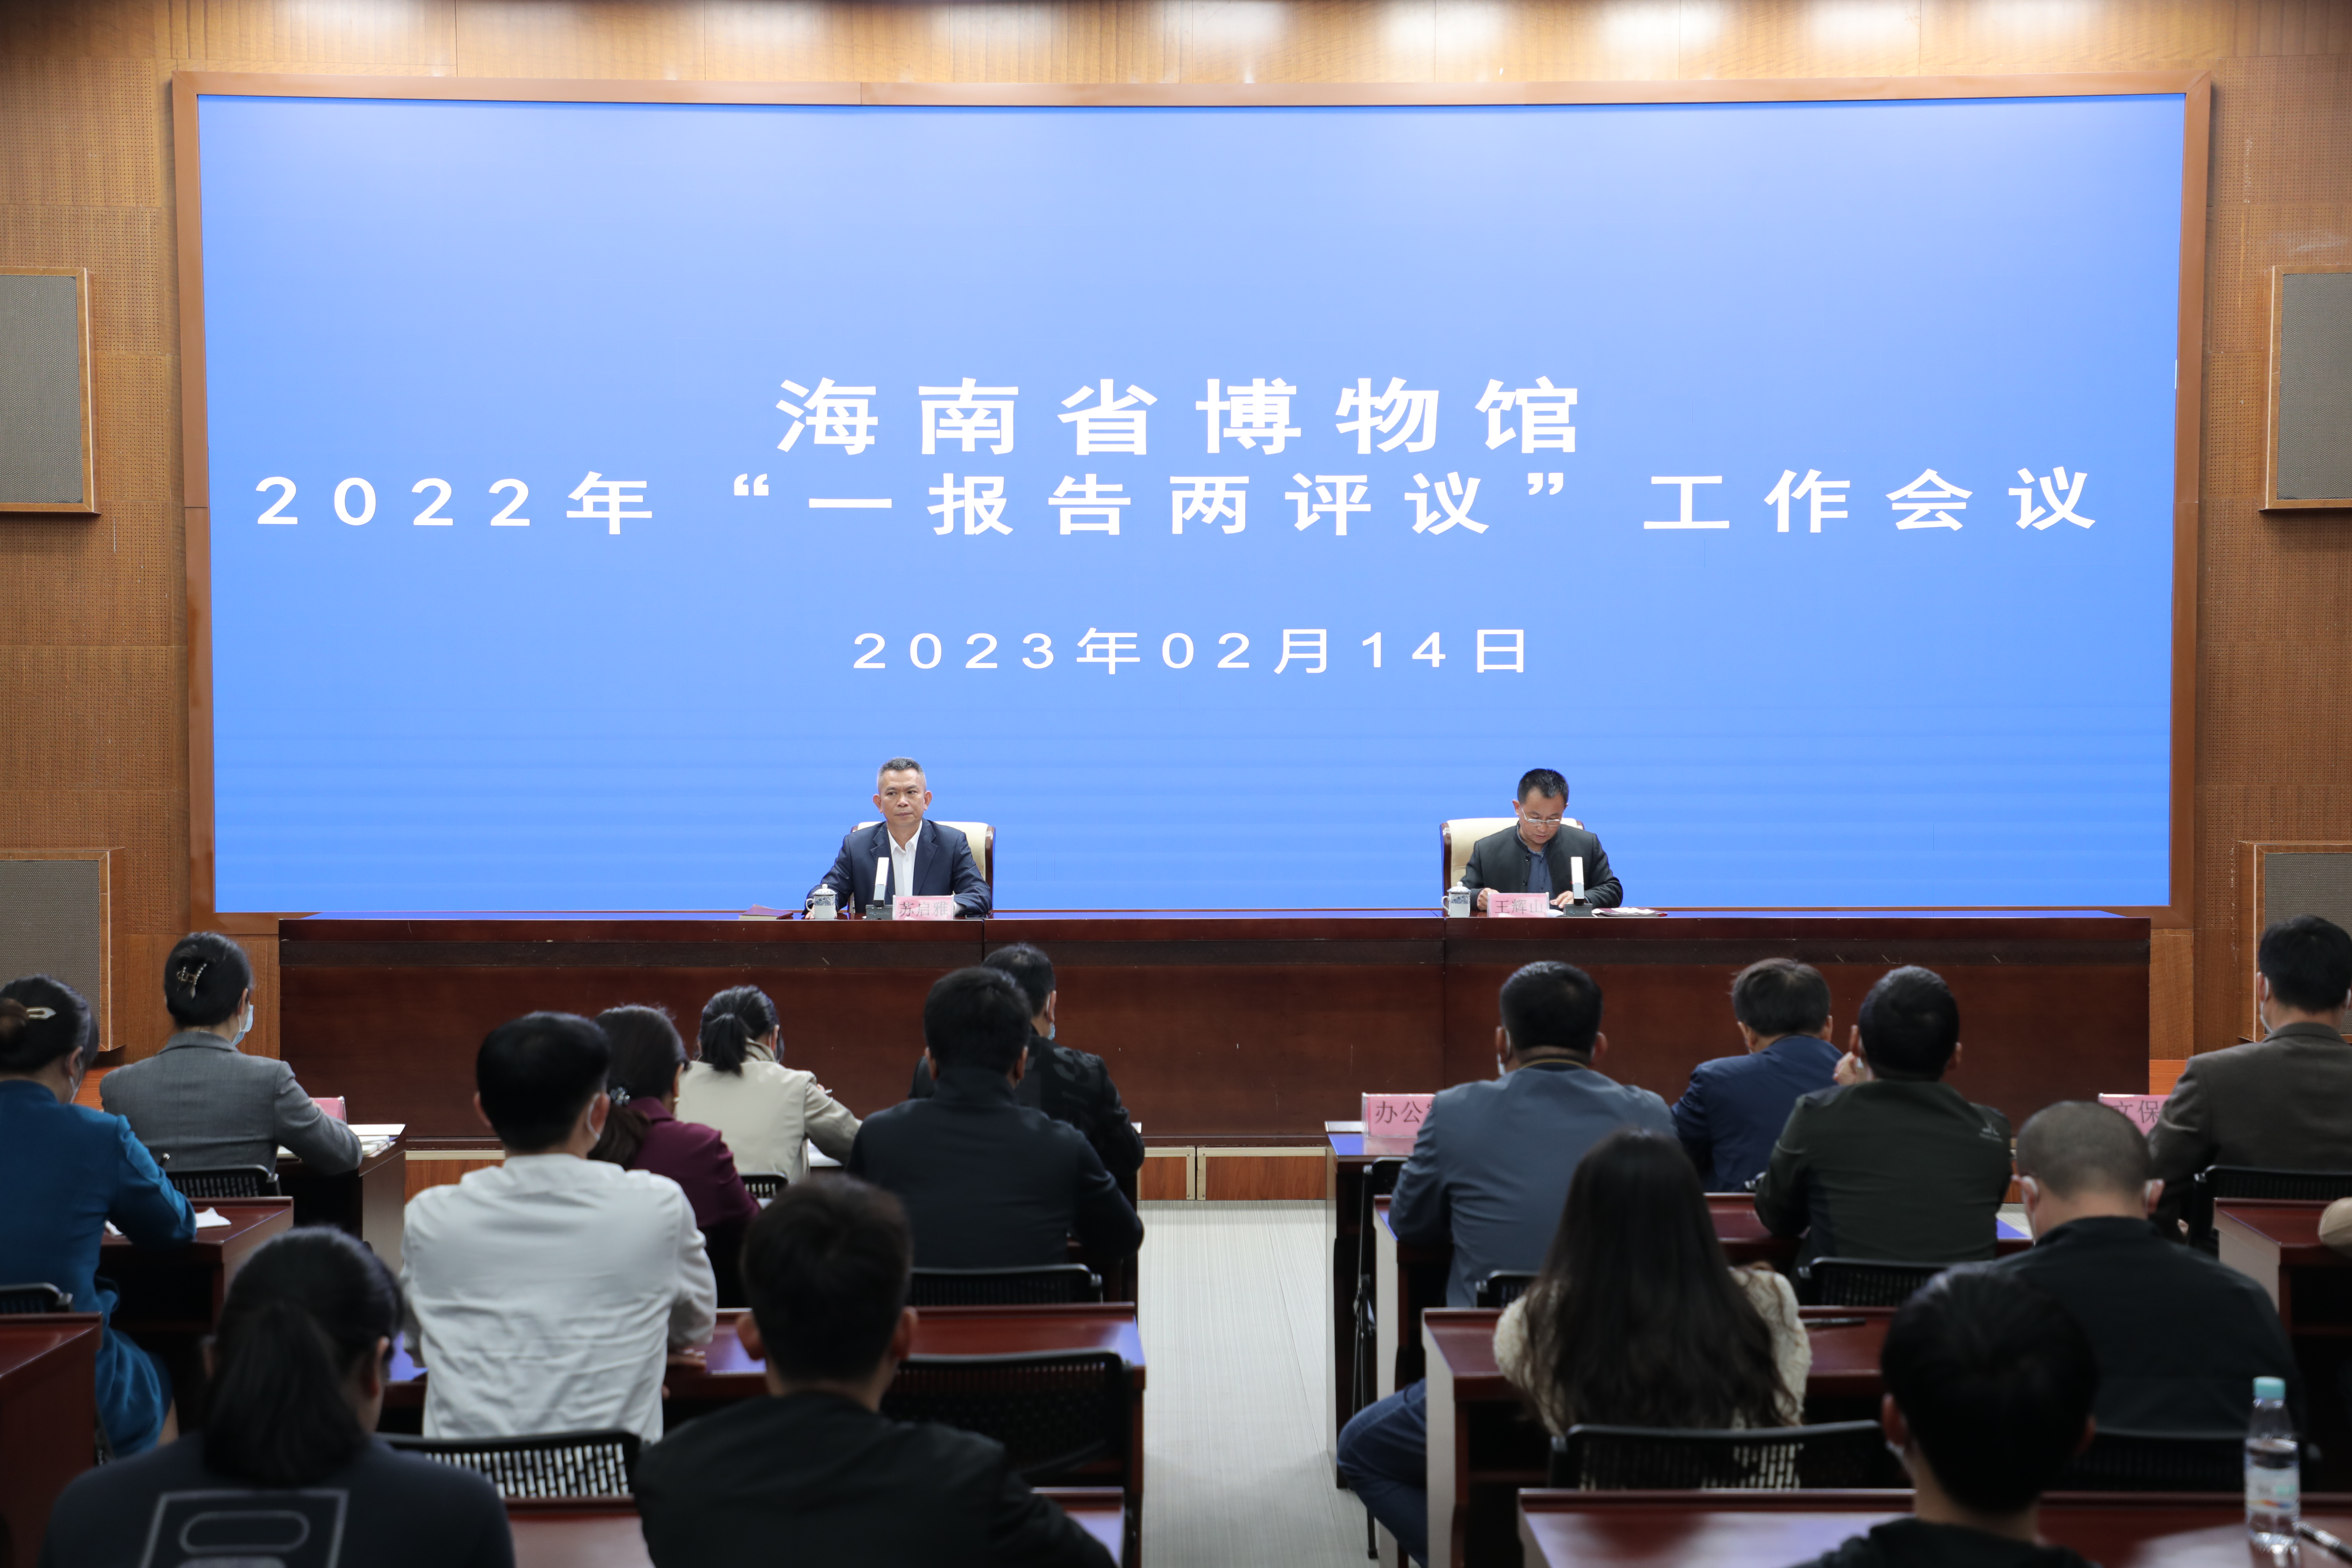 海南省博物馆召开2022年“一报告两评议”工作会议